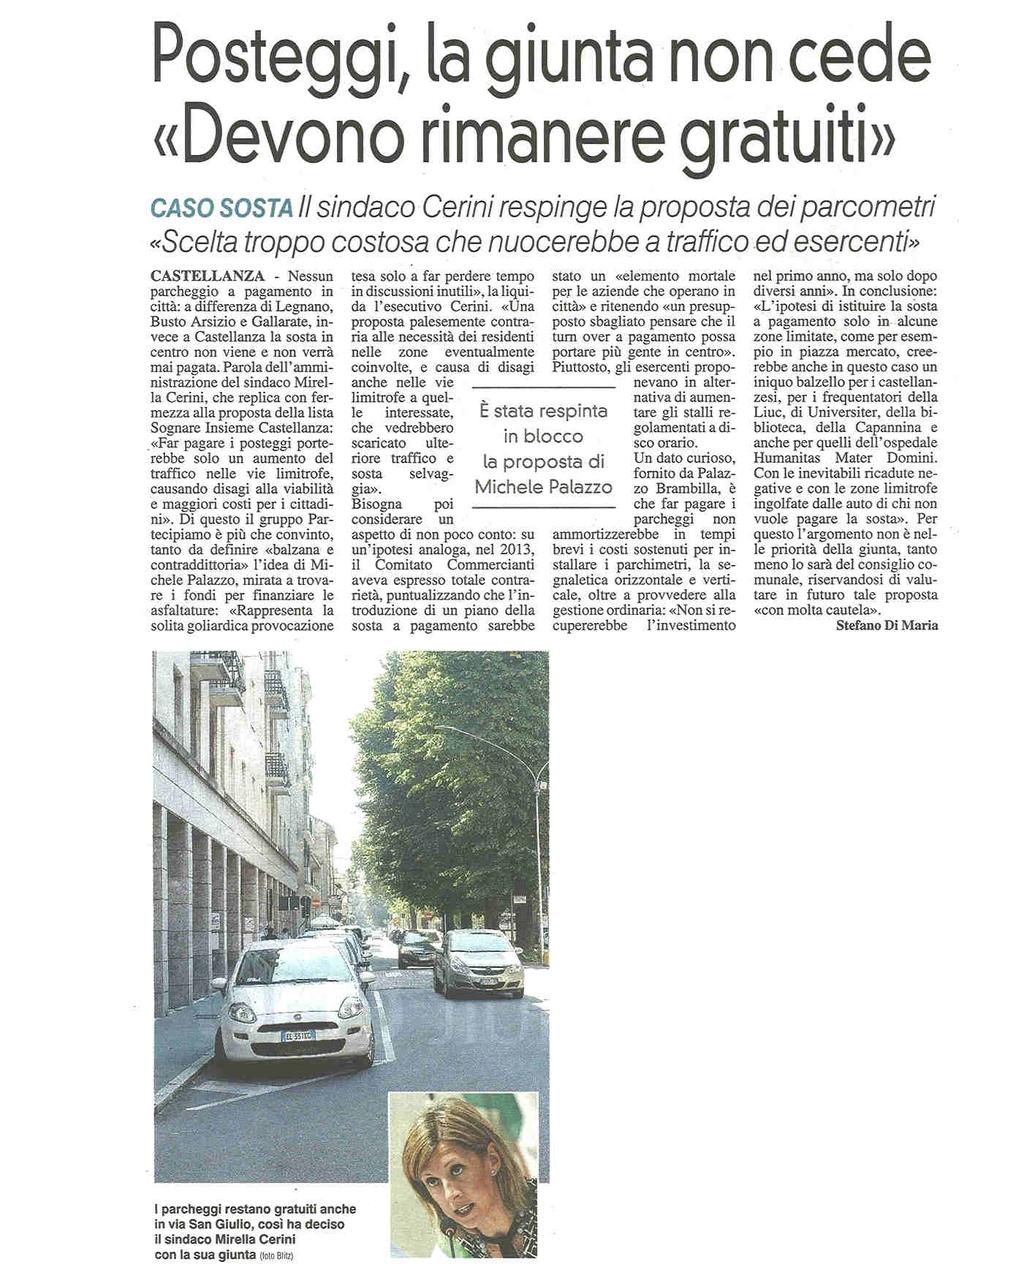 POSTEGGI, LA GIUNTA NON CEDE. "DEVONO RIMANERE GRATUITI" Caso sosta - il sindaco Cerini respinge la proposta dei parcometri.